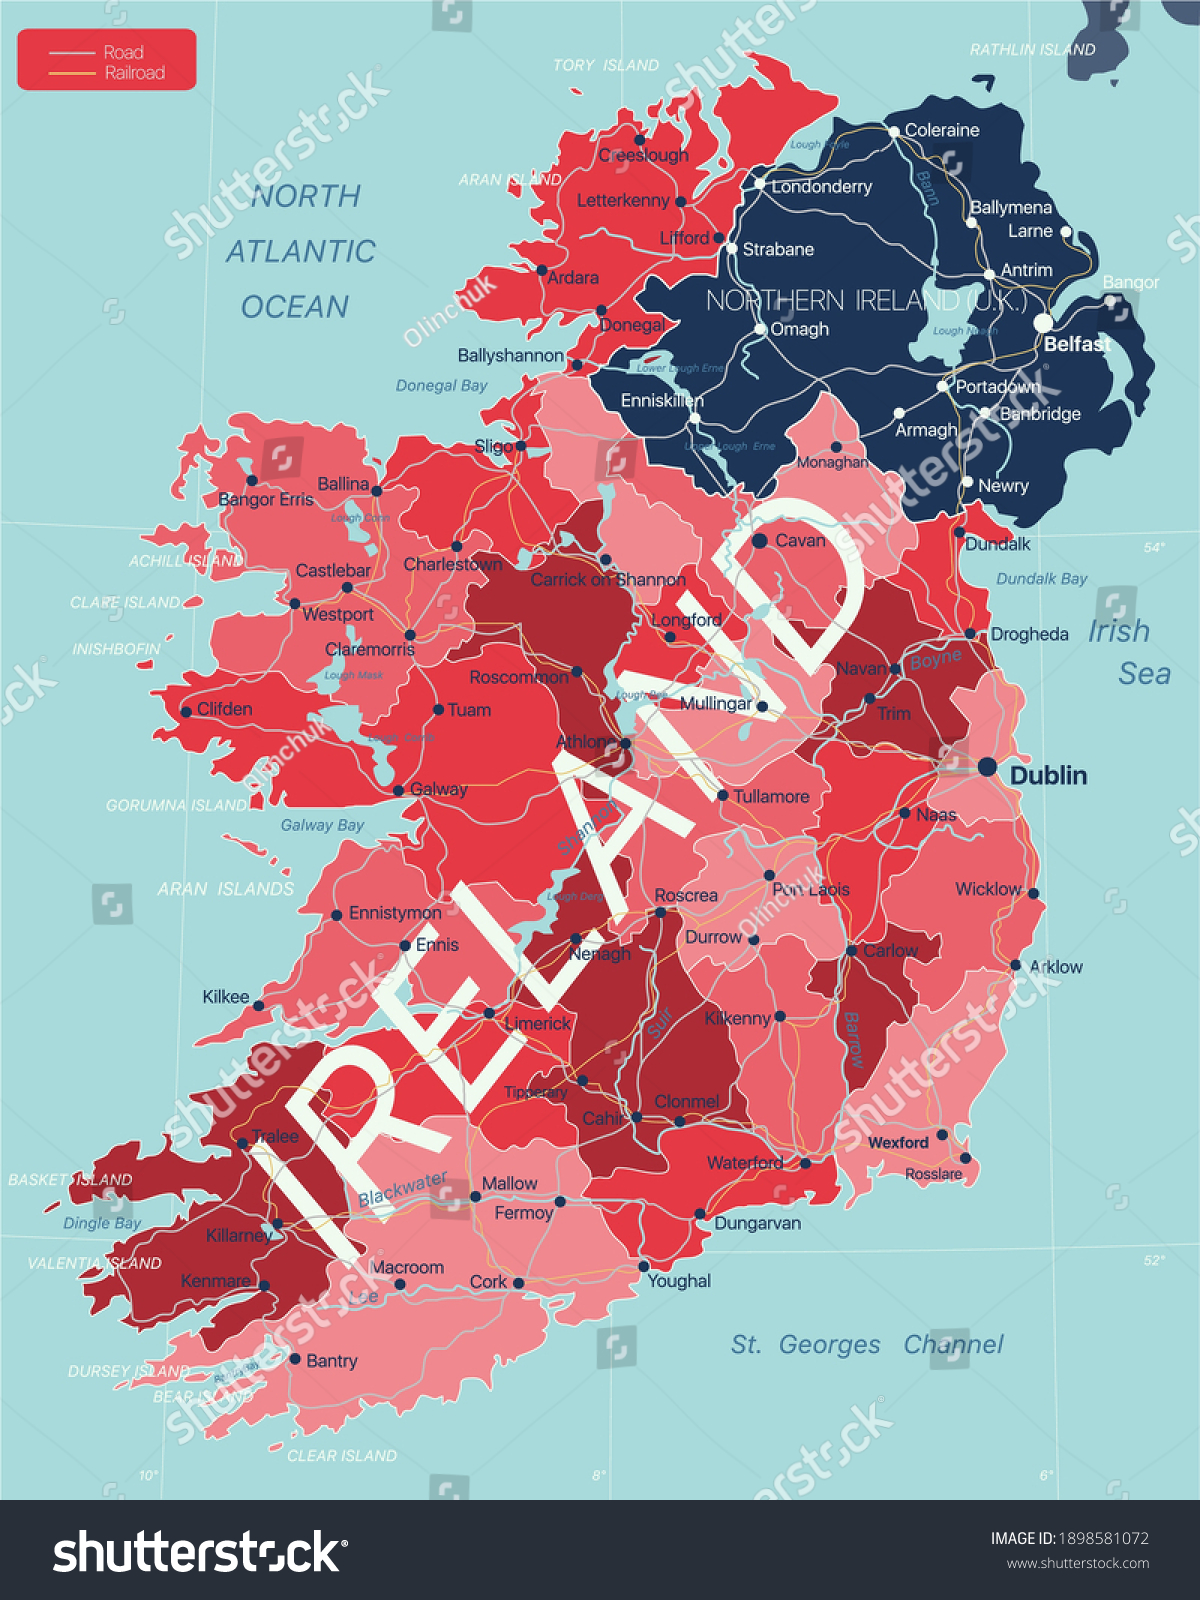 irish potato famine map